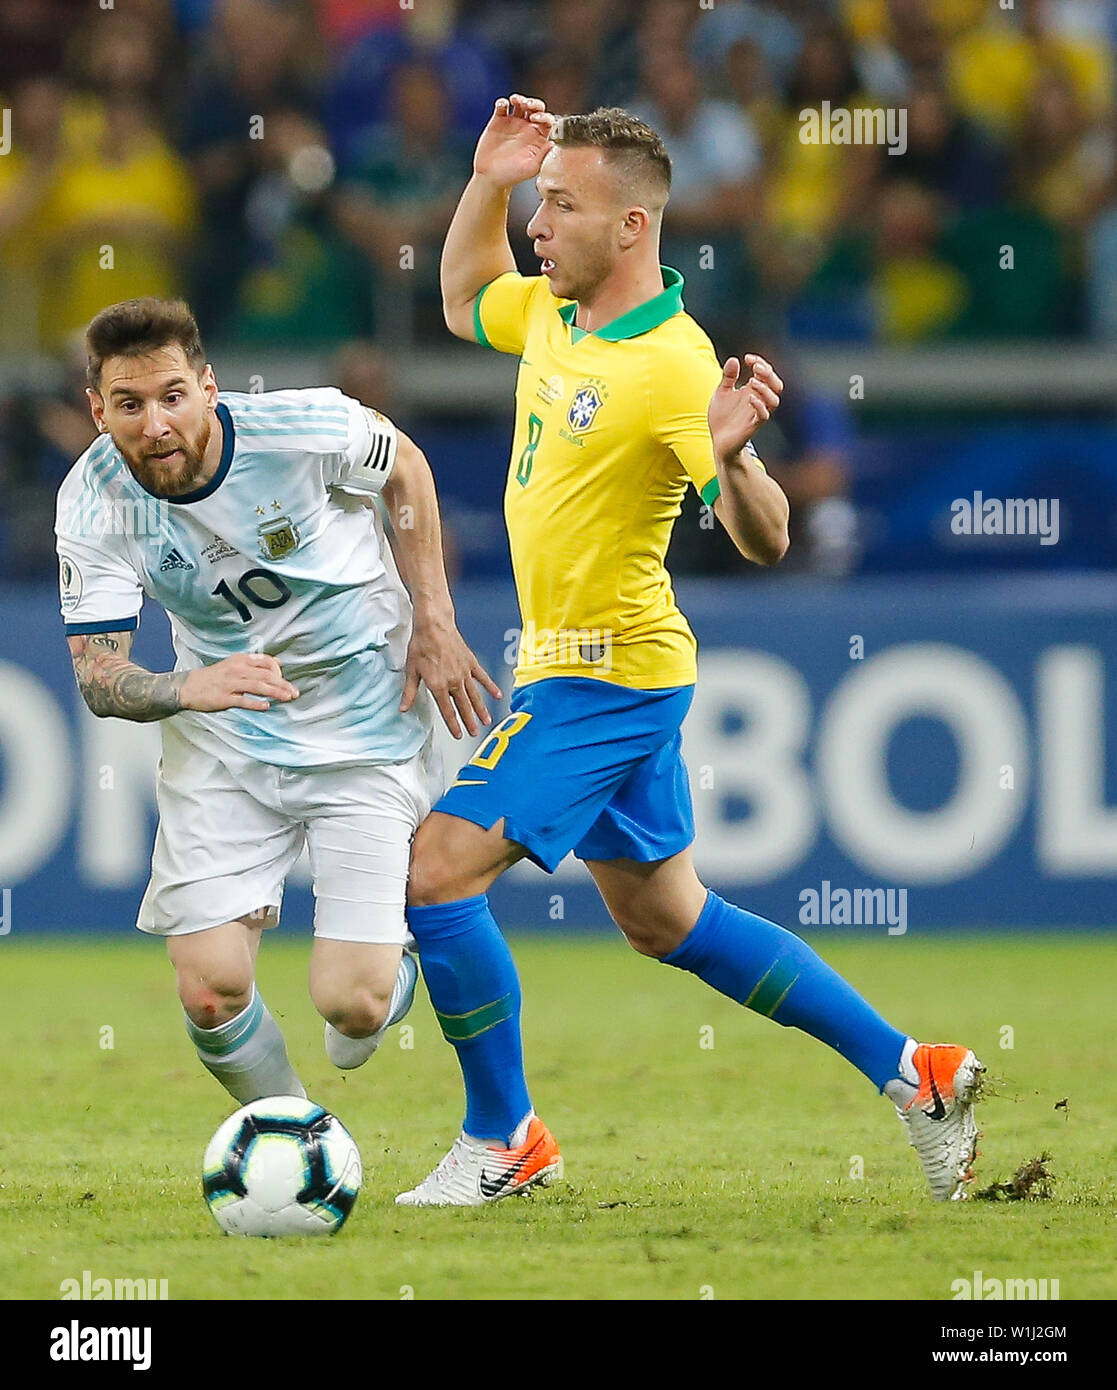 Brasil x Argentina: Tudo sobre o clássico pela semifinal da Copa América